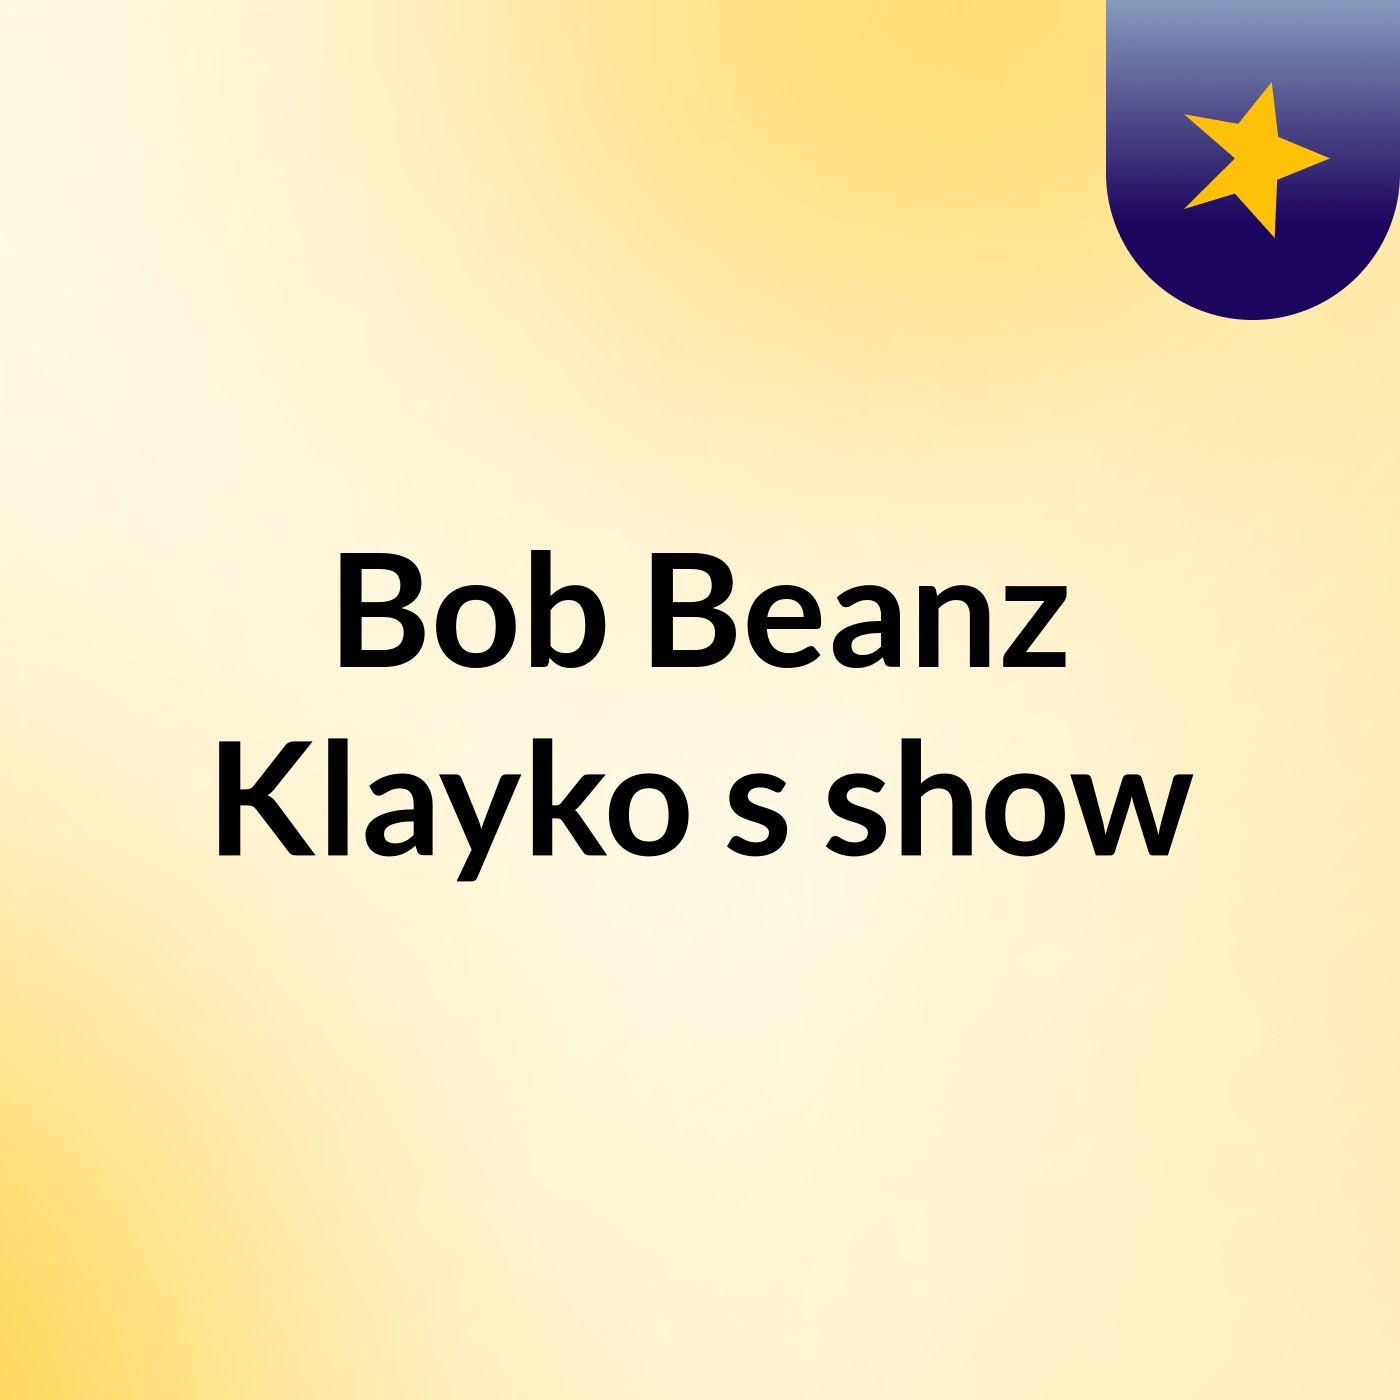 Bob Beanz Klayko's show